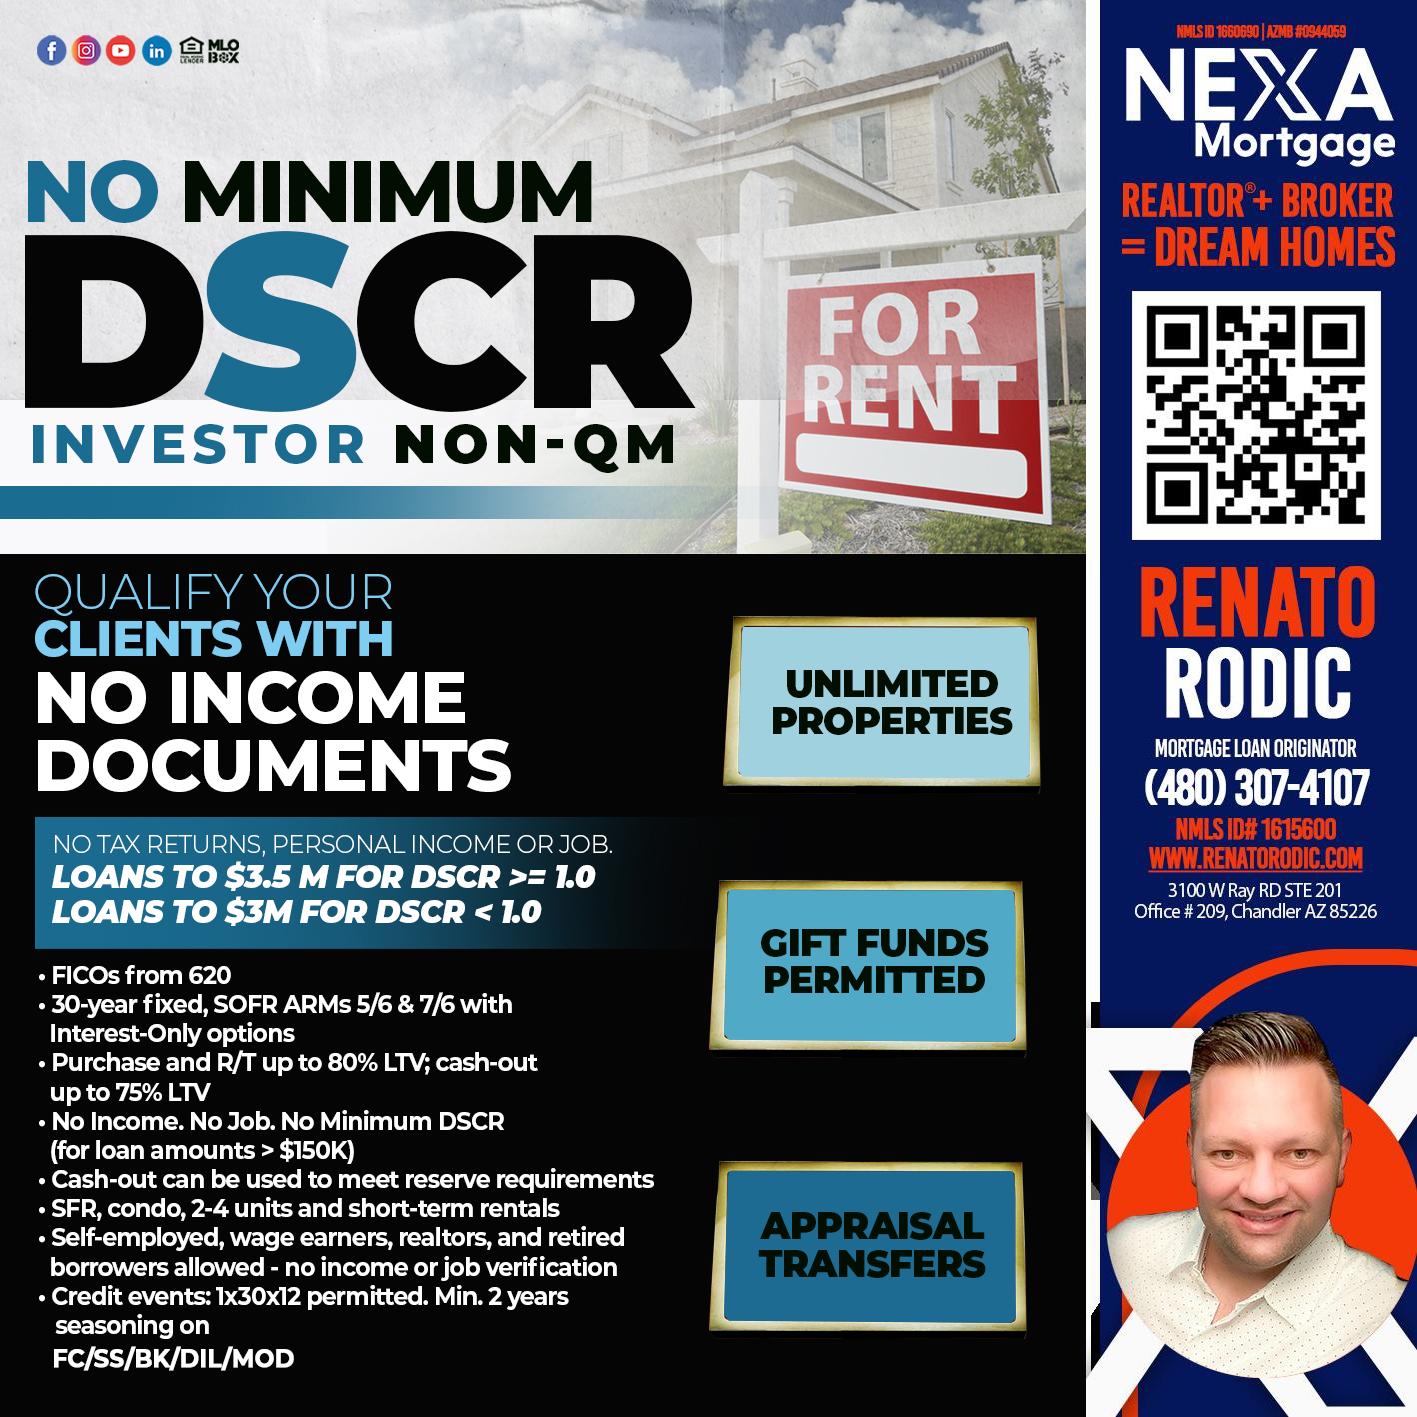 DSCR - Renato Rodic -Mortgage Loan Originator